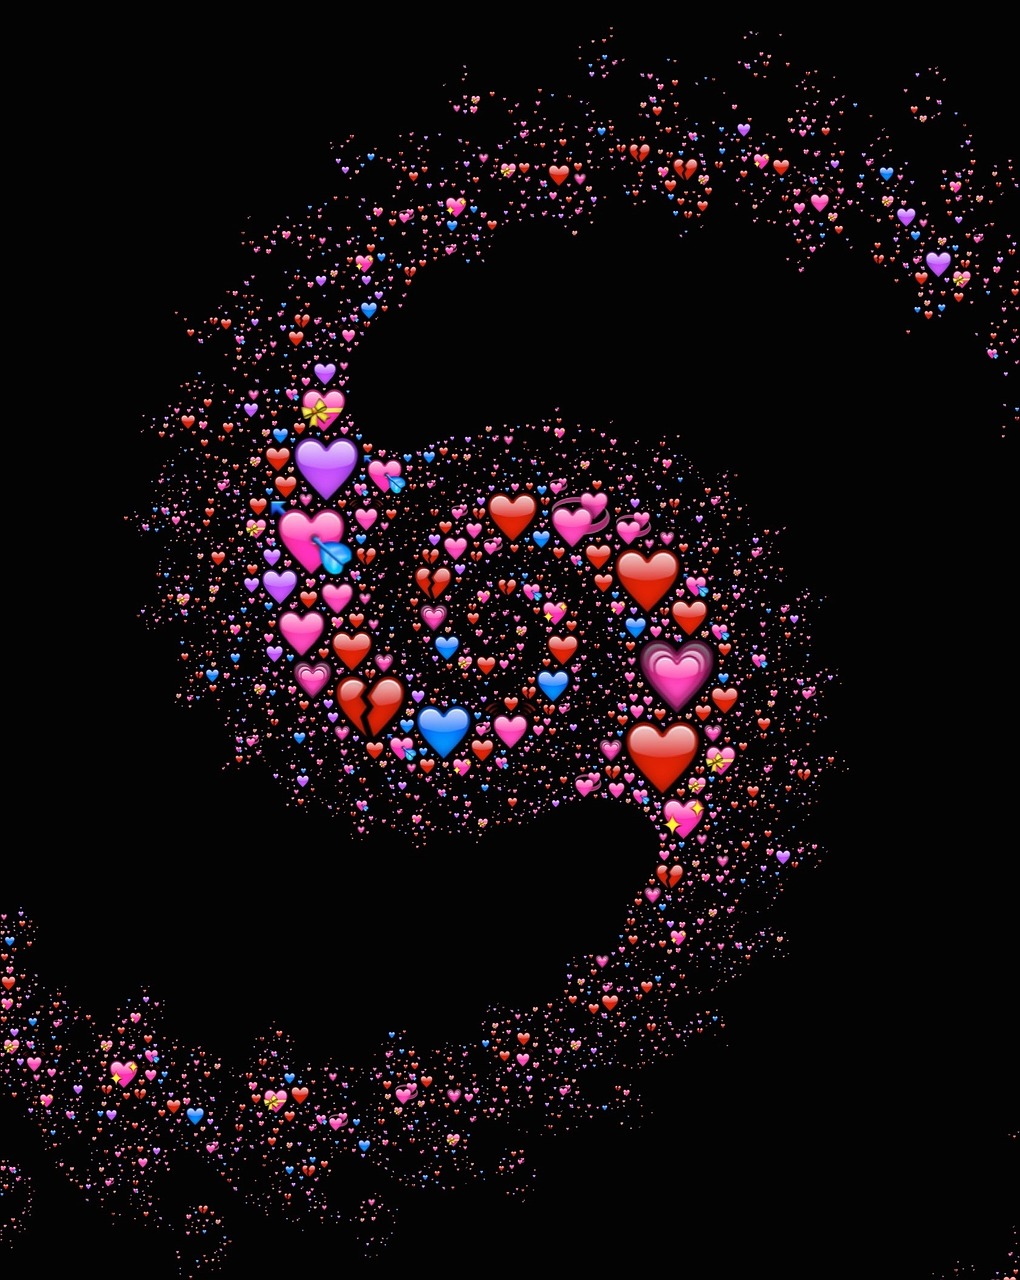 Tình yêu là cảm xúc đẹp nhất của con người. Bức ảnh về emoji tình yêu này sẽ khiến bạn hiểu được sức mạnh của tình yêu thật sự. Hãy xem và cảm nhận những cảm xúc sâu sắc trong trái tim của bạn.